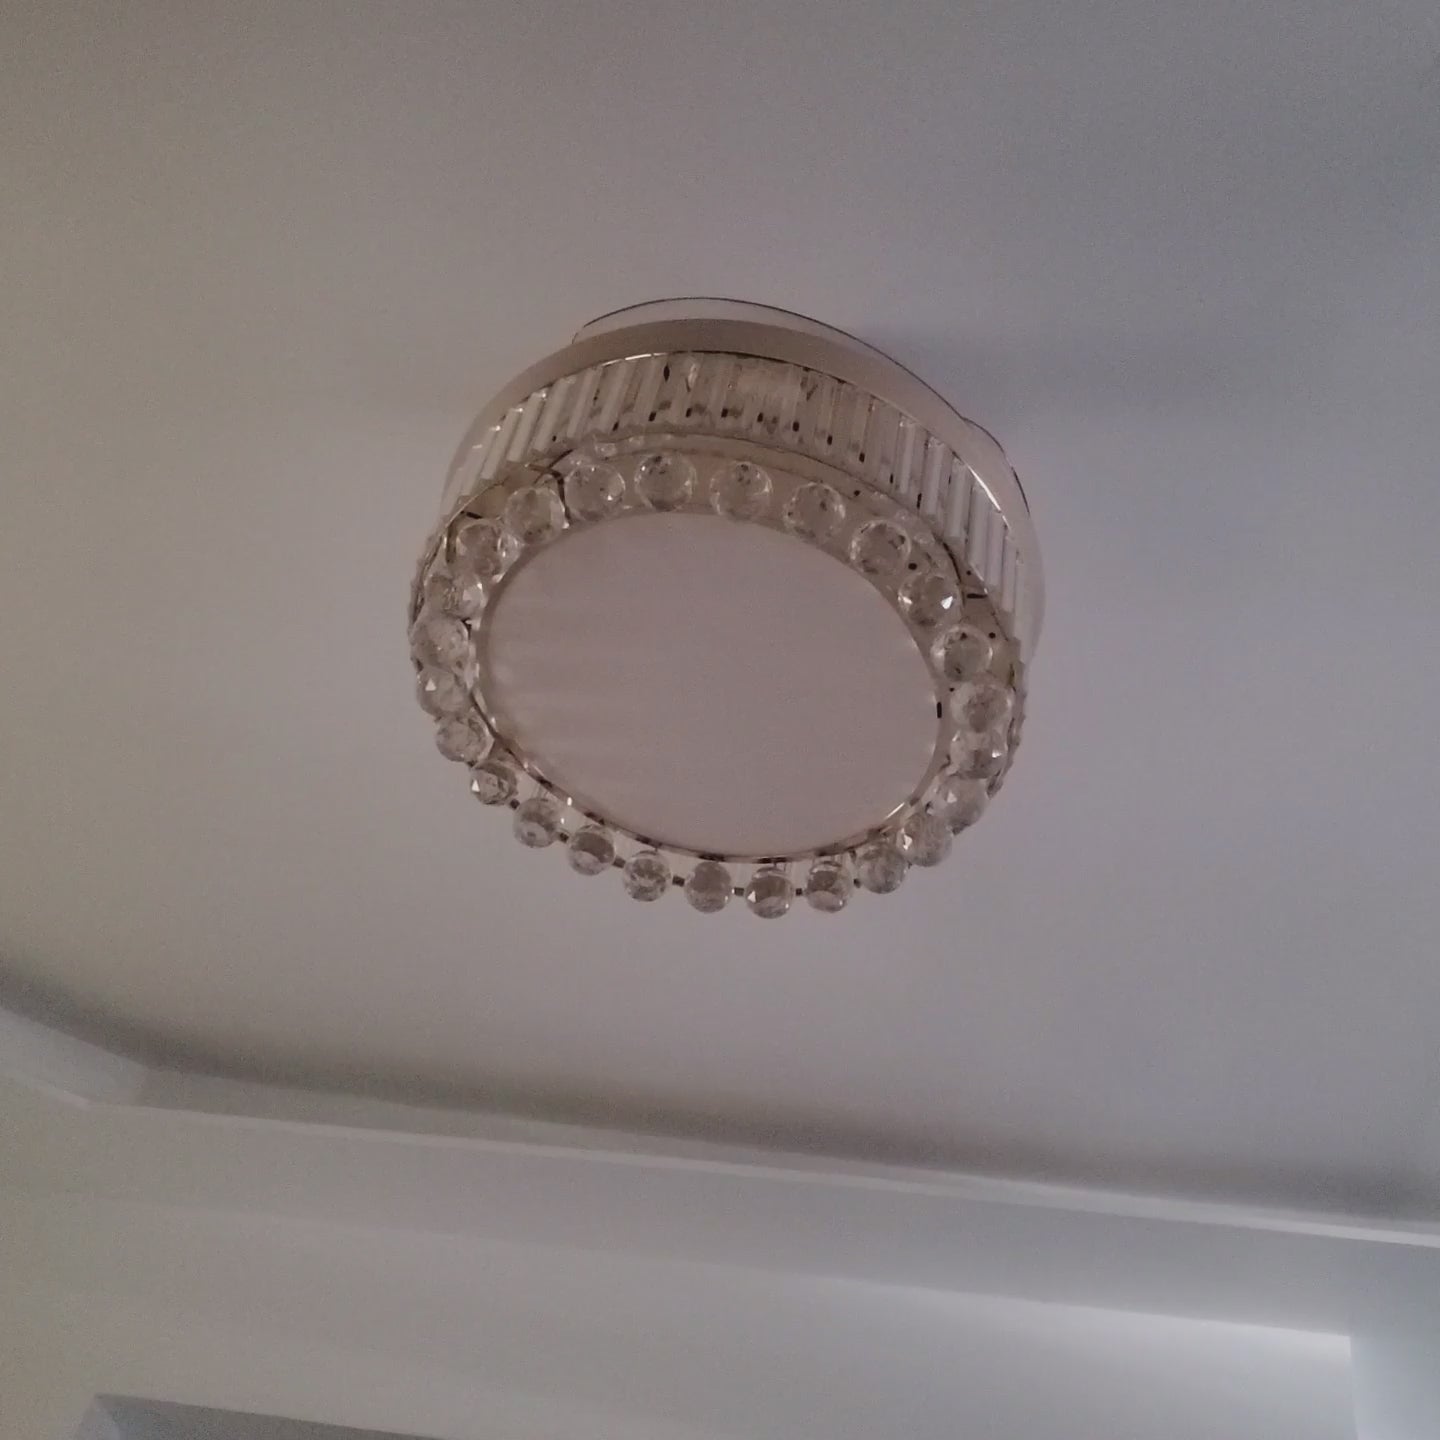 retractable ceiling fans